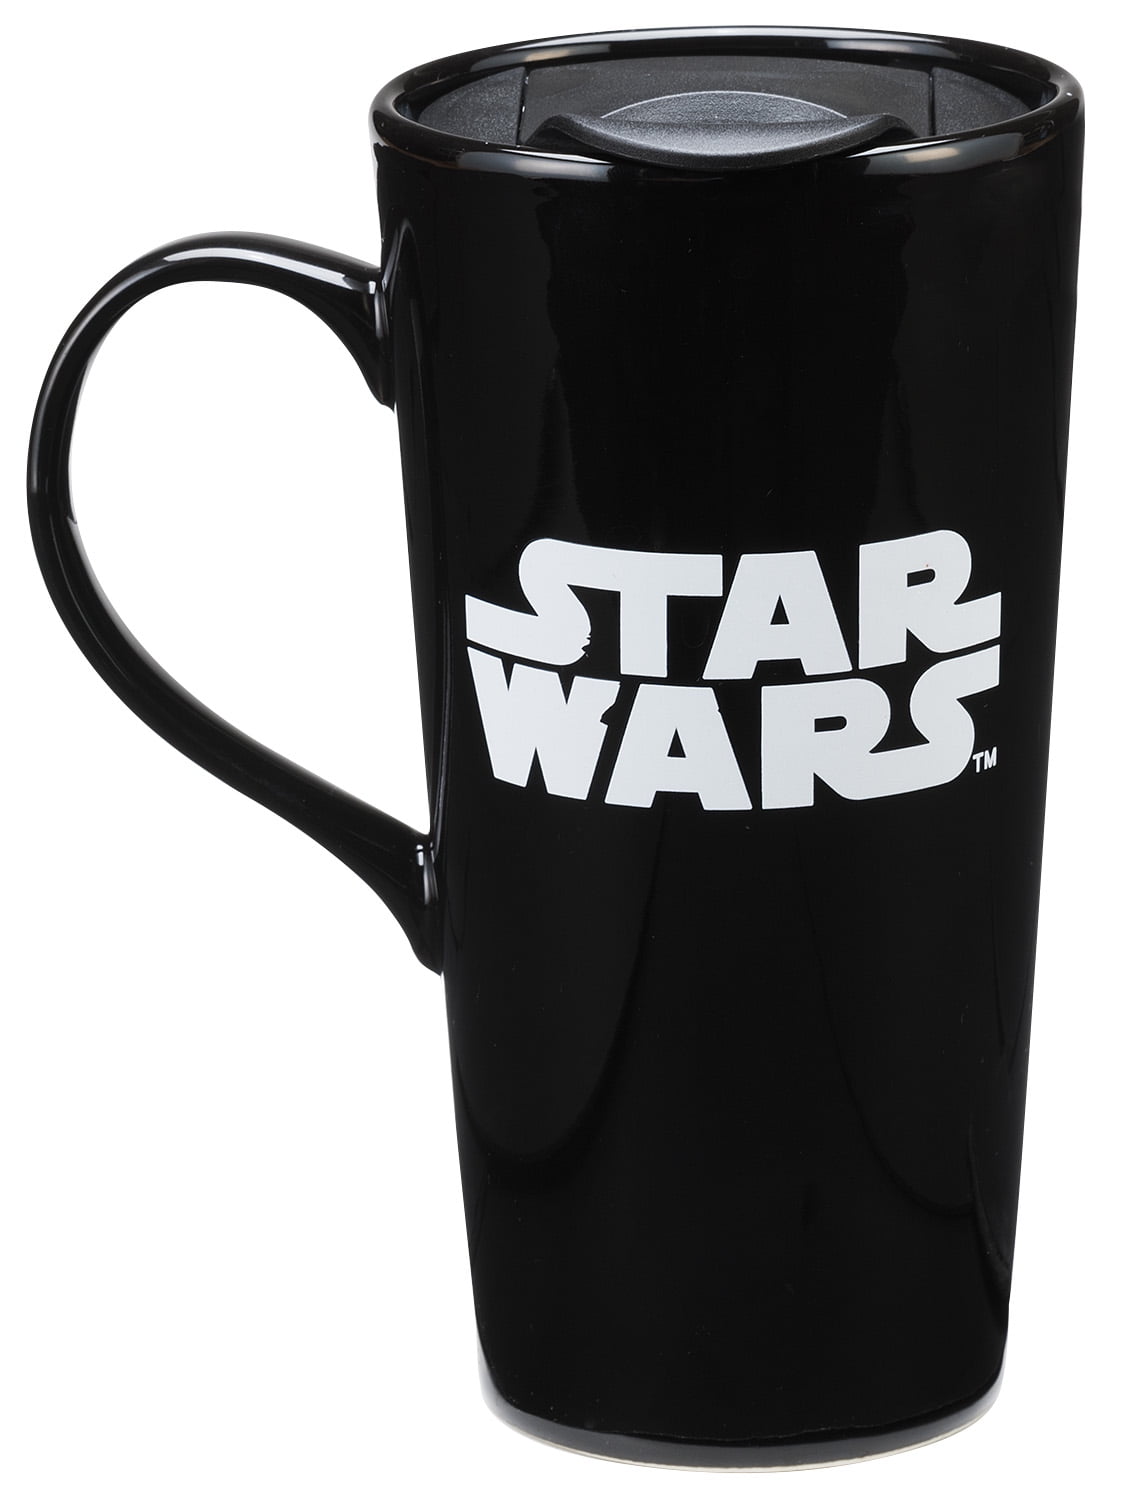 star wars ceramic travel mug